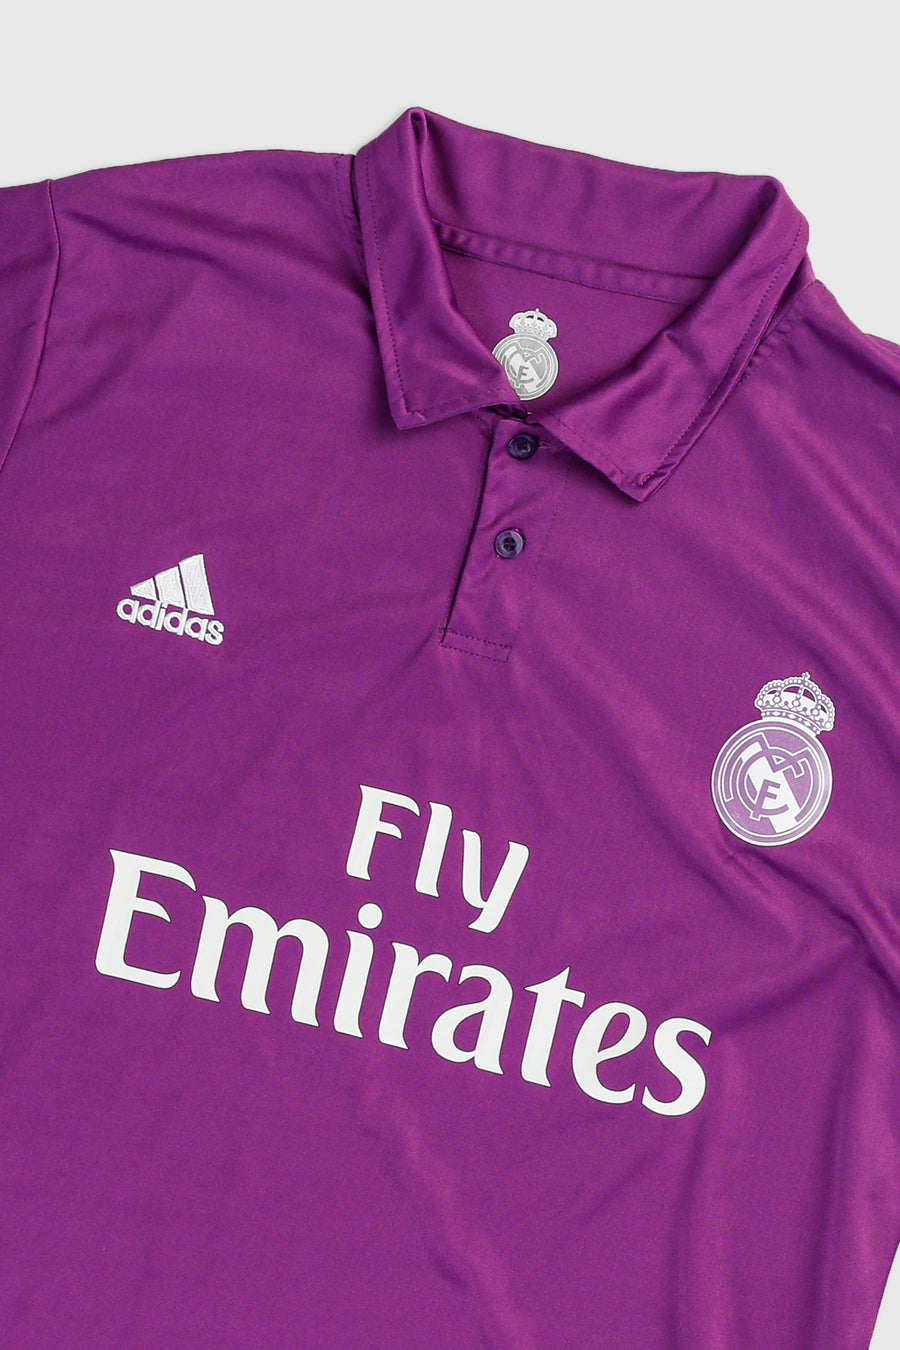 Vintage Madrid Soccer Jersey - L